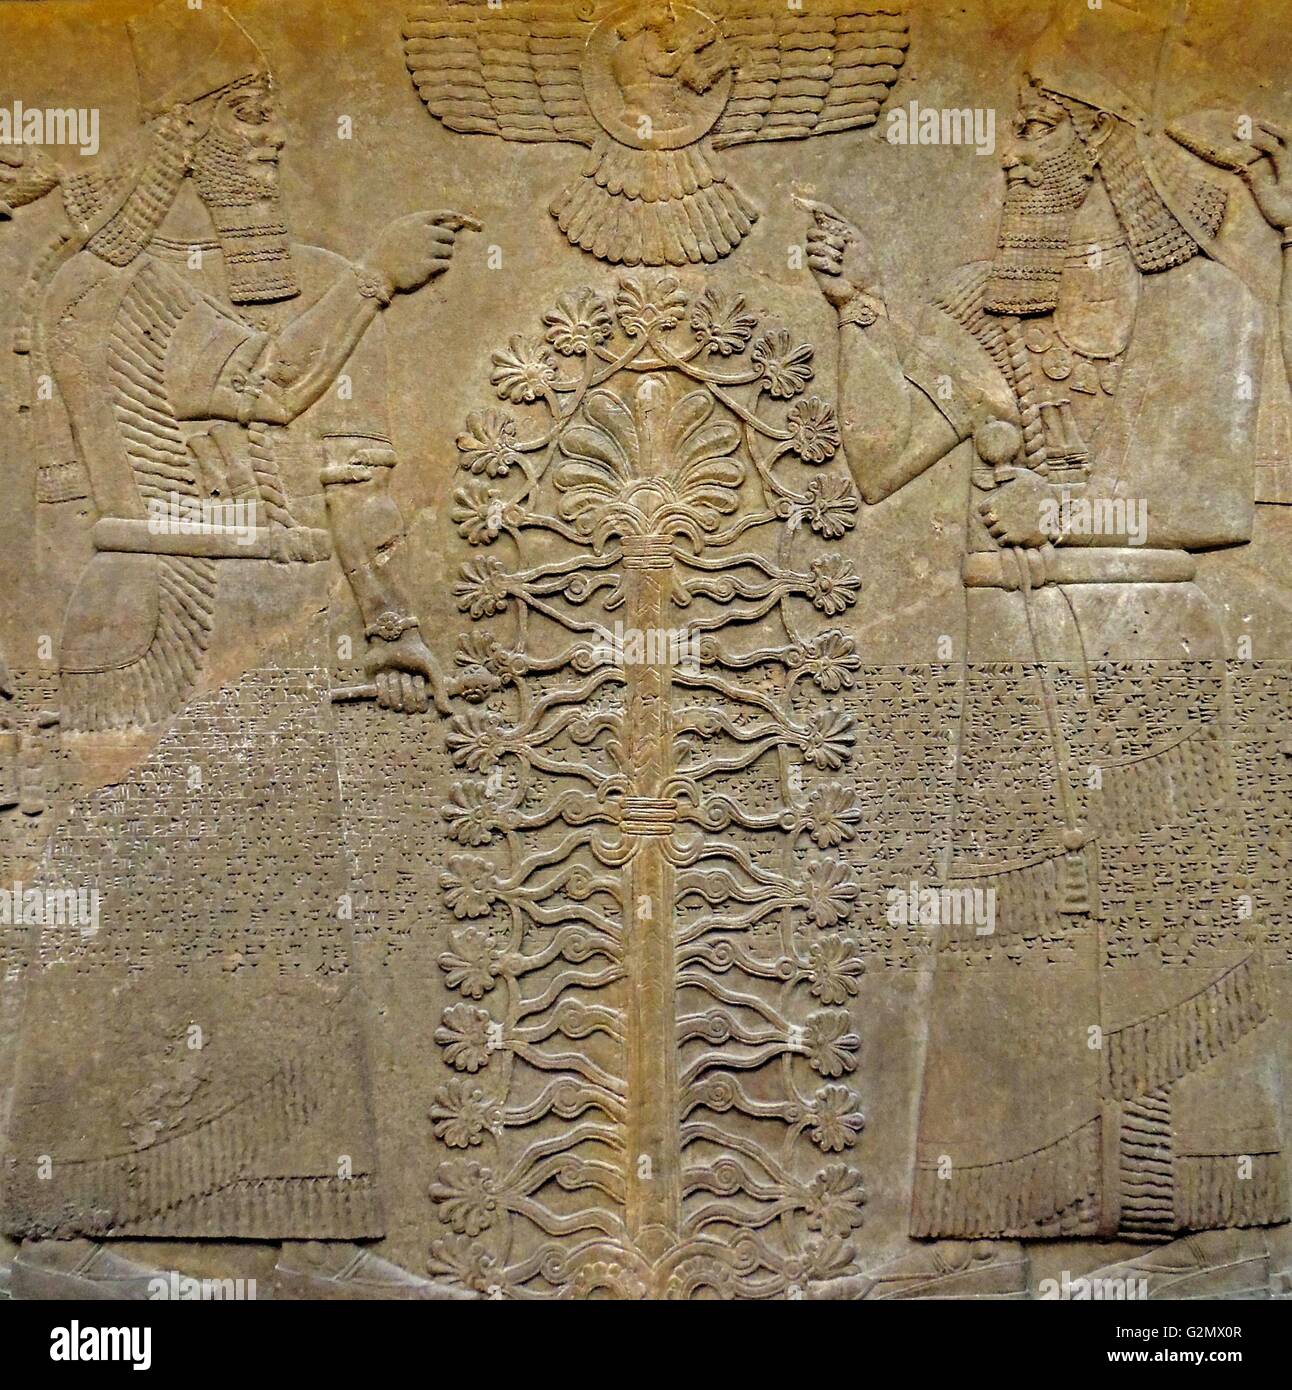 Scena simbolica. Assira, circa 865-860 A.C. Re Ashurnasirpal appare due volte, vestito di vesti rituali e tenendo il macis simboleggia autorità. Foto Stock